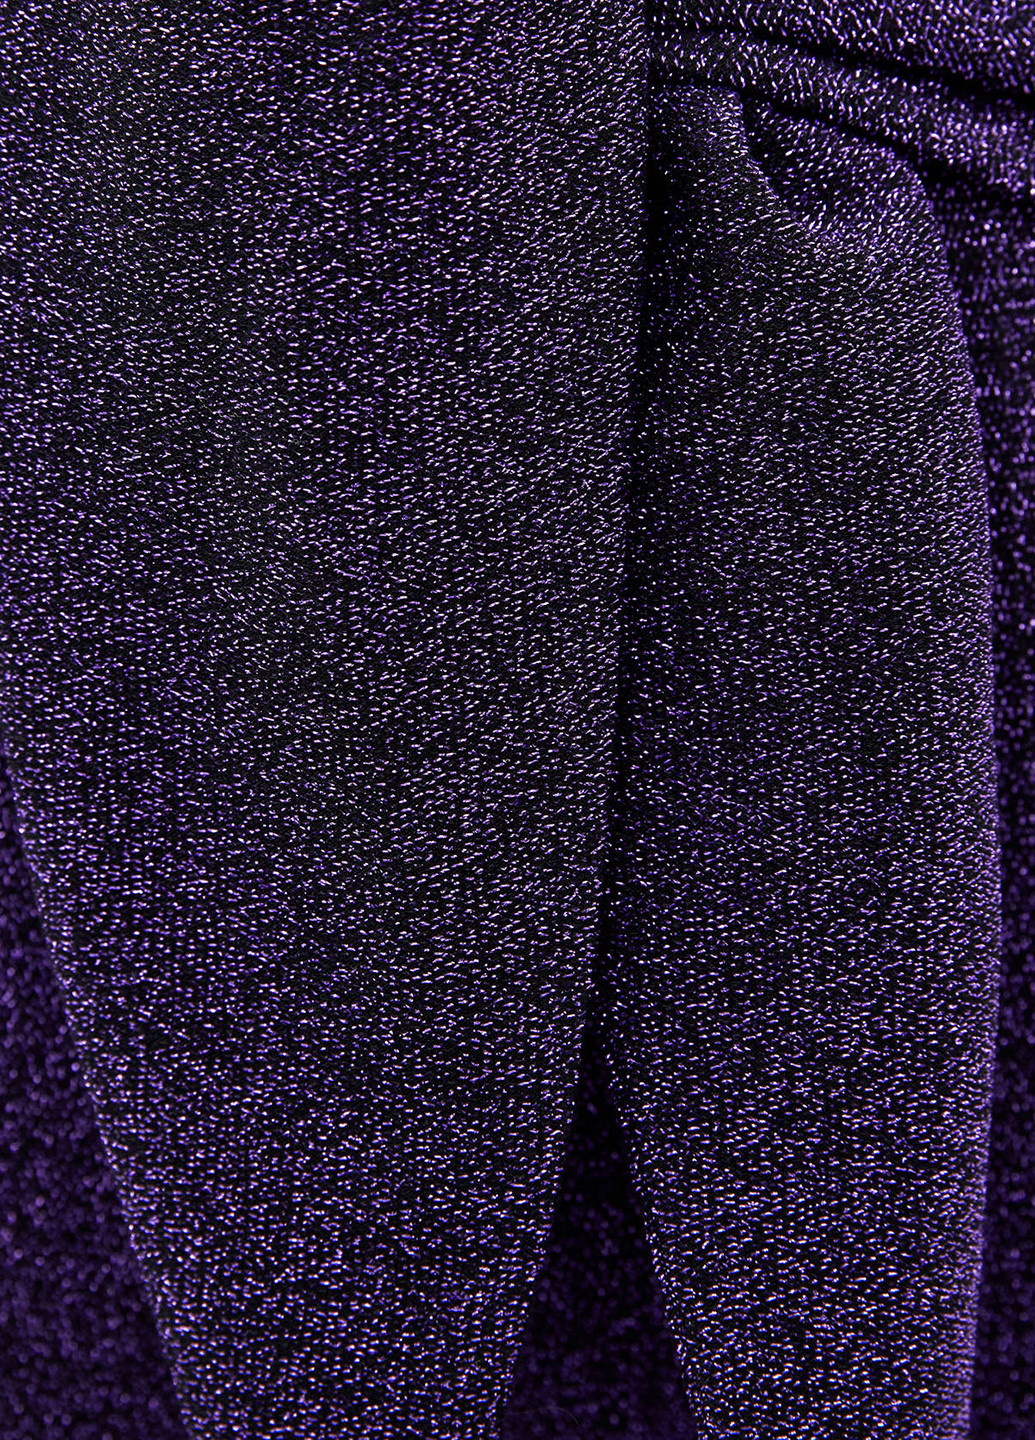 Фиолетовые демисезонные леггинсы Bershka